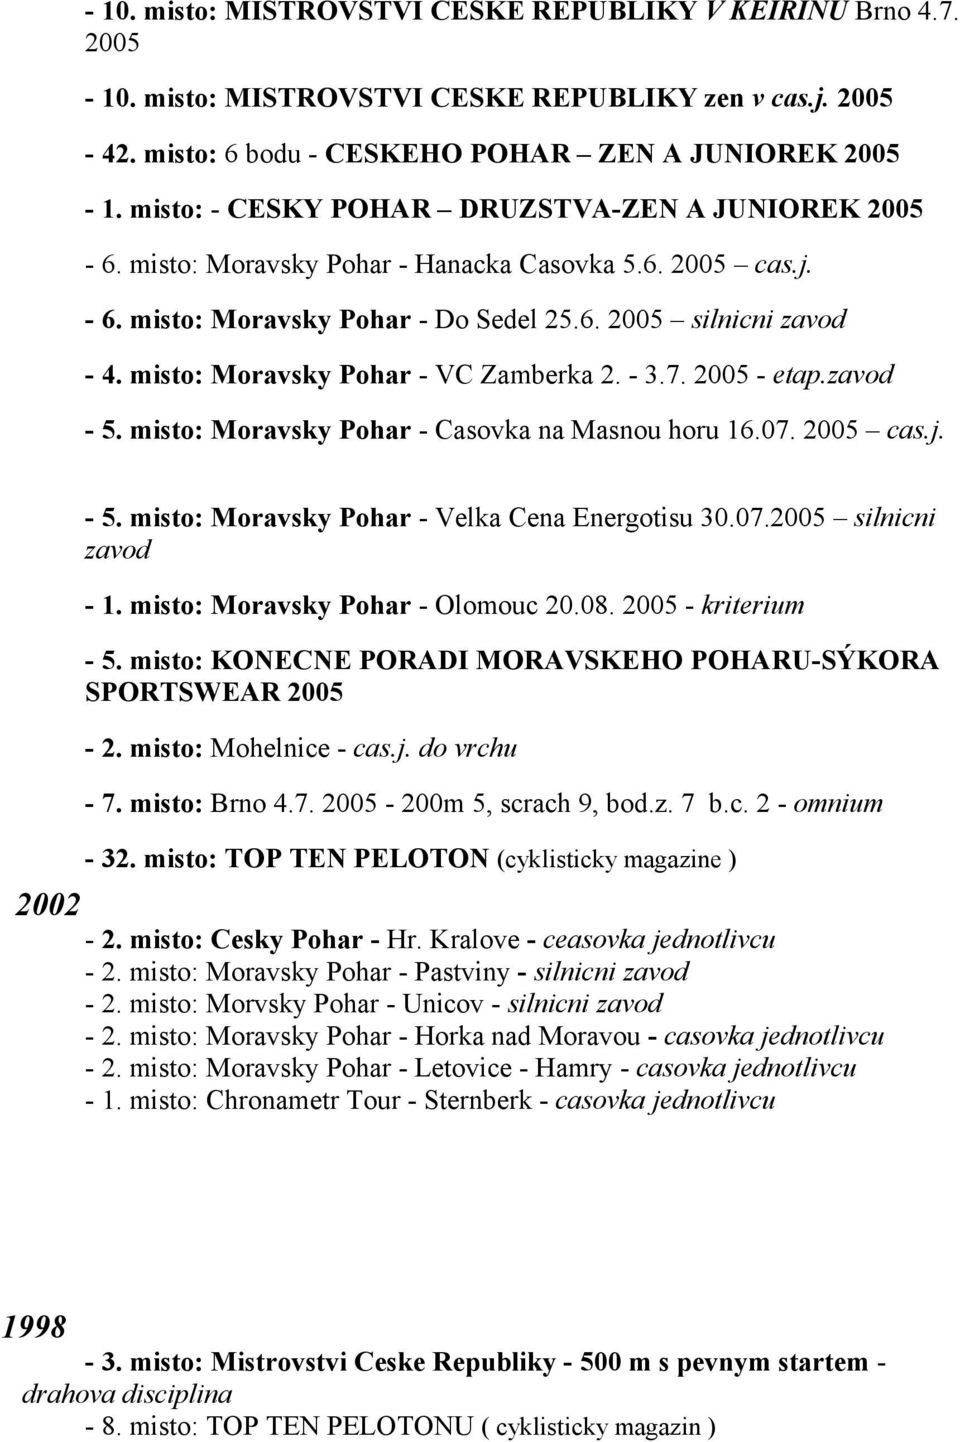 misto: Moravsky Pohar - VC Zamberka 2. - 3.7. 2005 - etap.zavod - 5. misto: Moravsky Pohar - Casovka na Masnou horu 16.07. 2005 cas.j. závod Moravského po - 5.